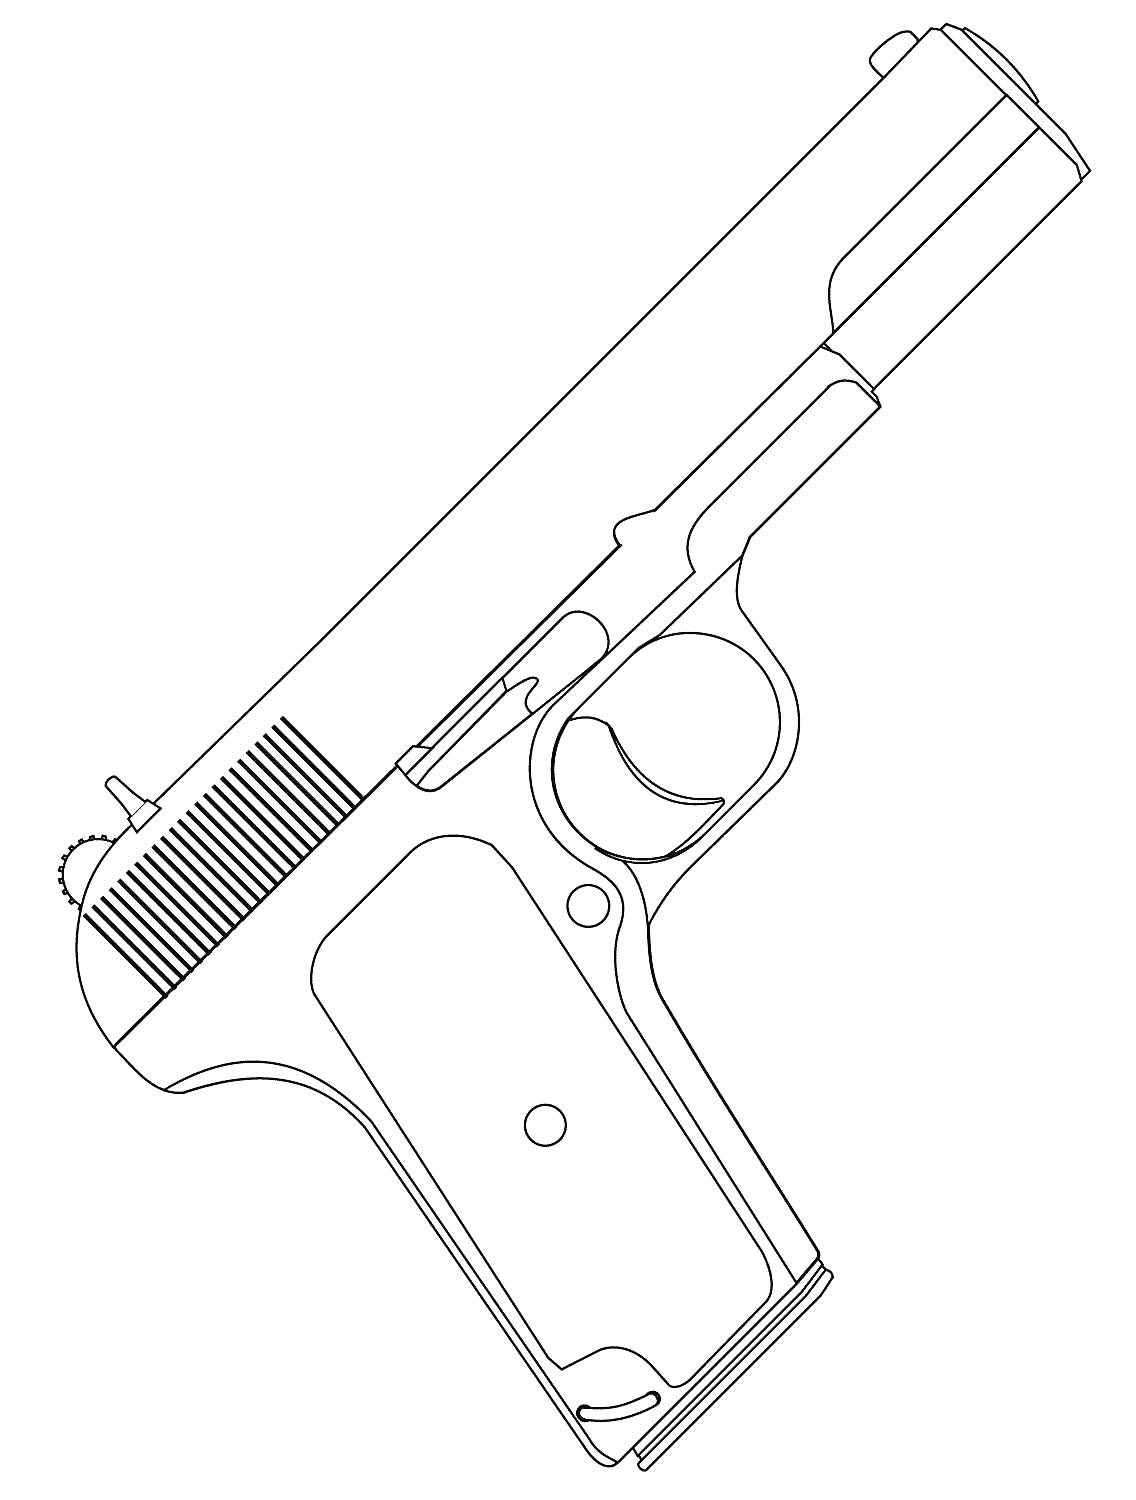 Раскраска Пистолет с затвором, спусковым крючком и рукояткой